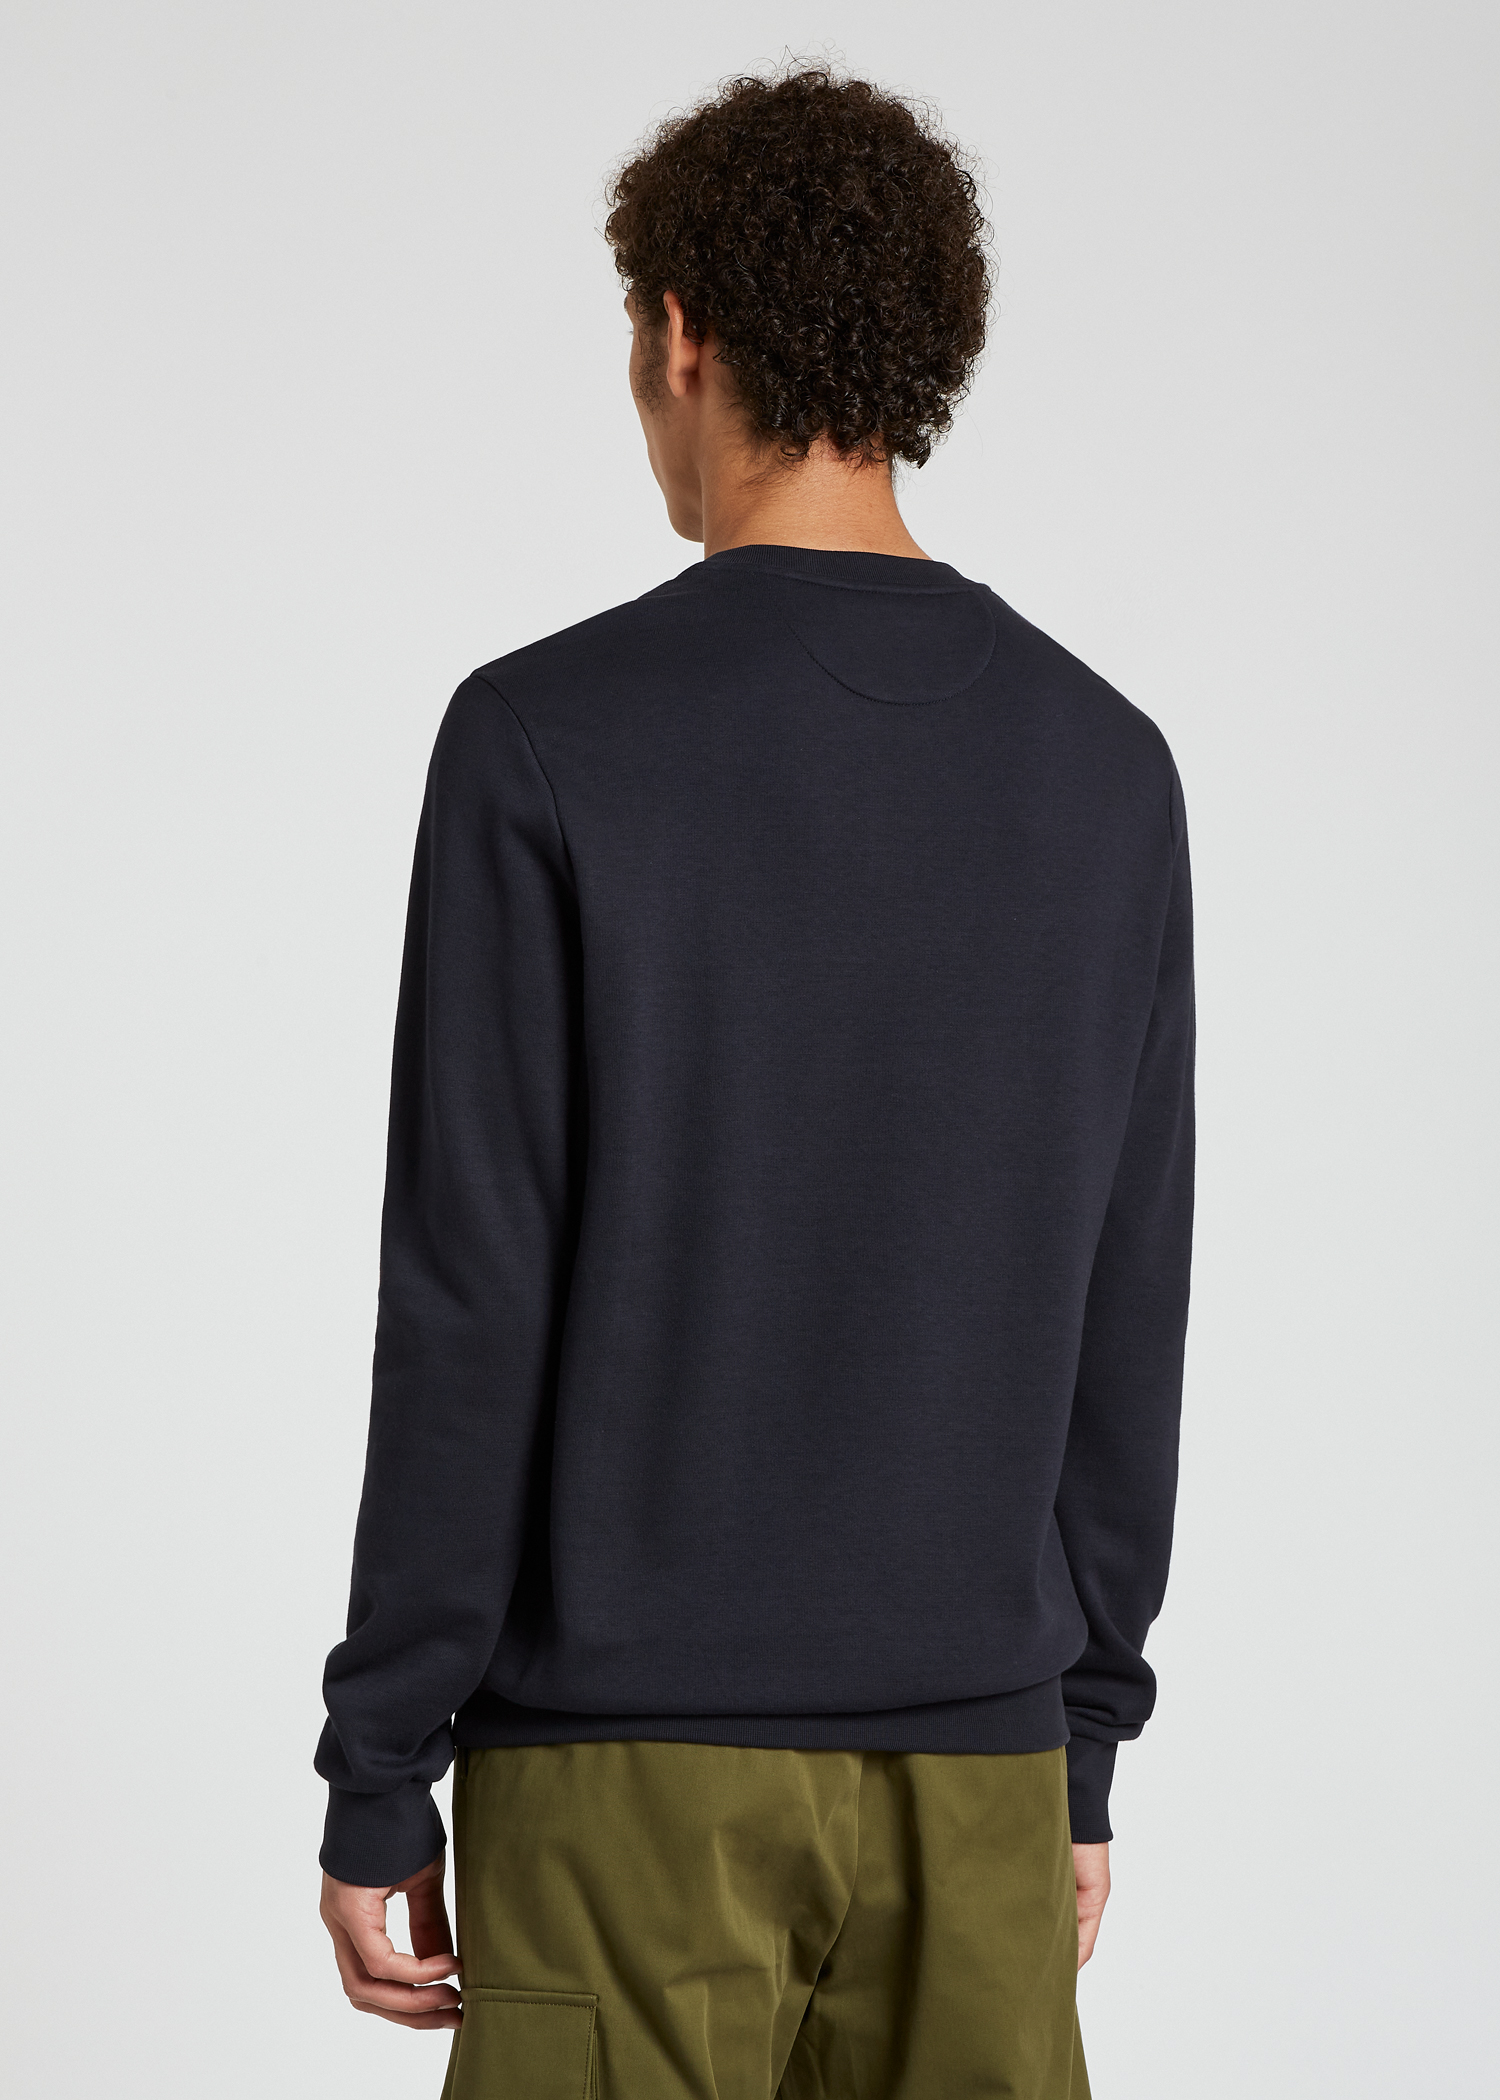 Model Back view - Men's Dark Navy 'Paint Splatter' Sweatshirt Paul Smith